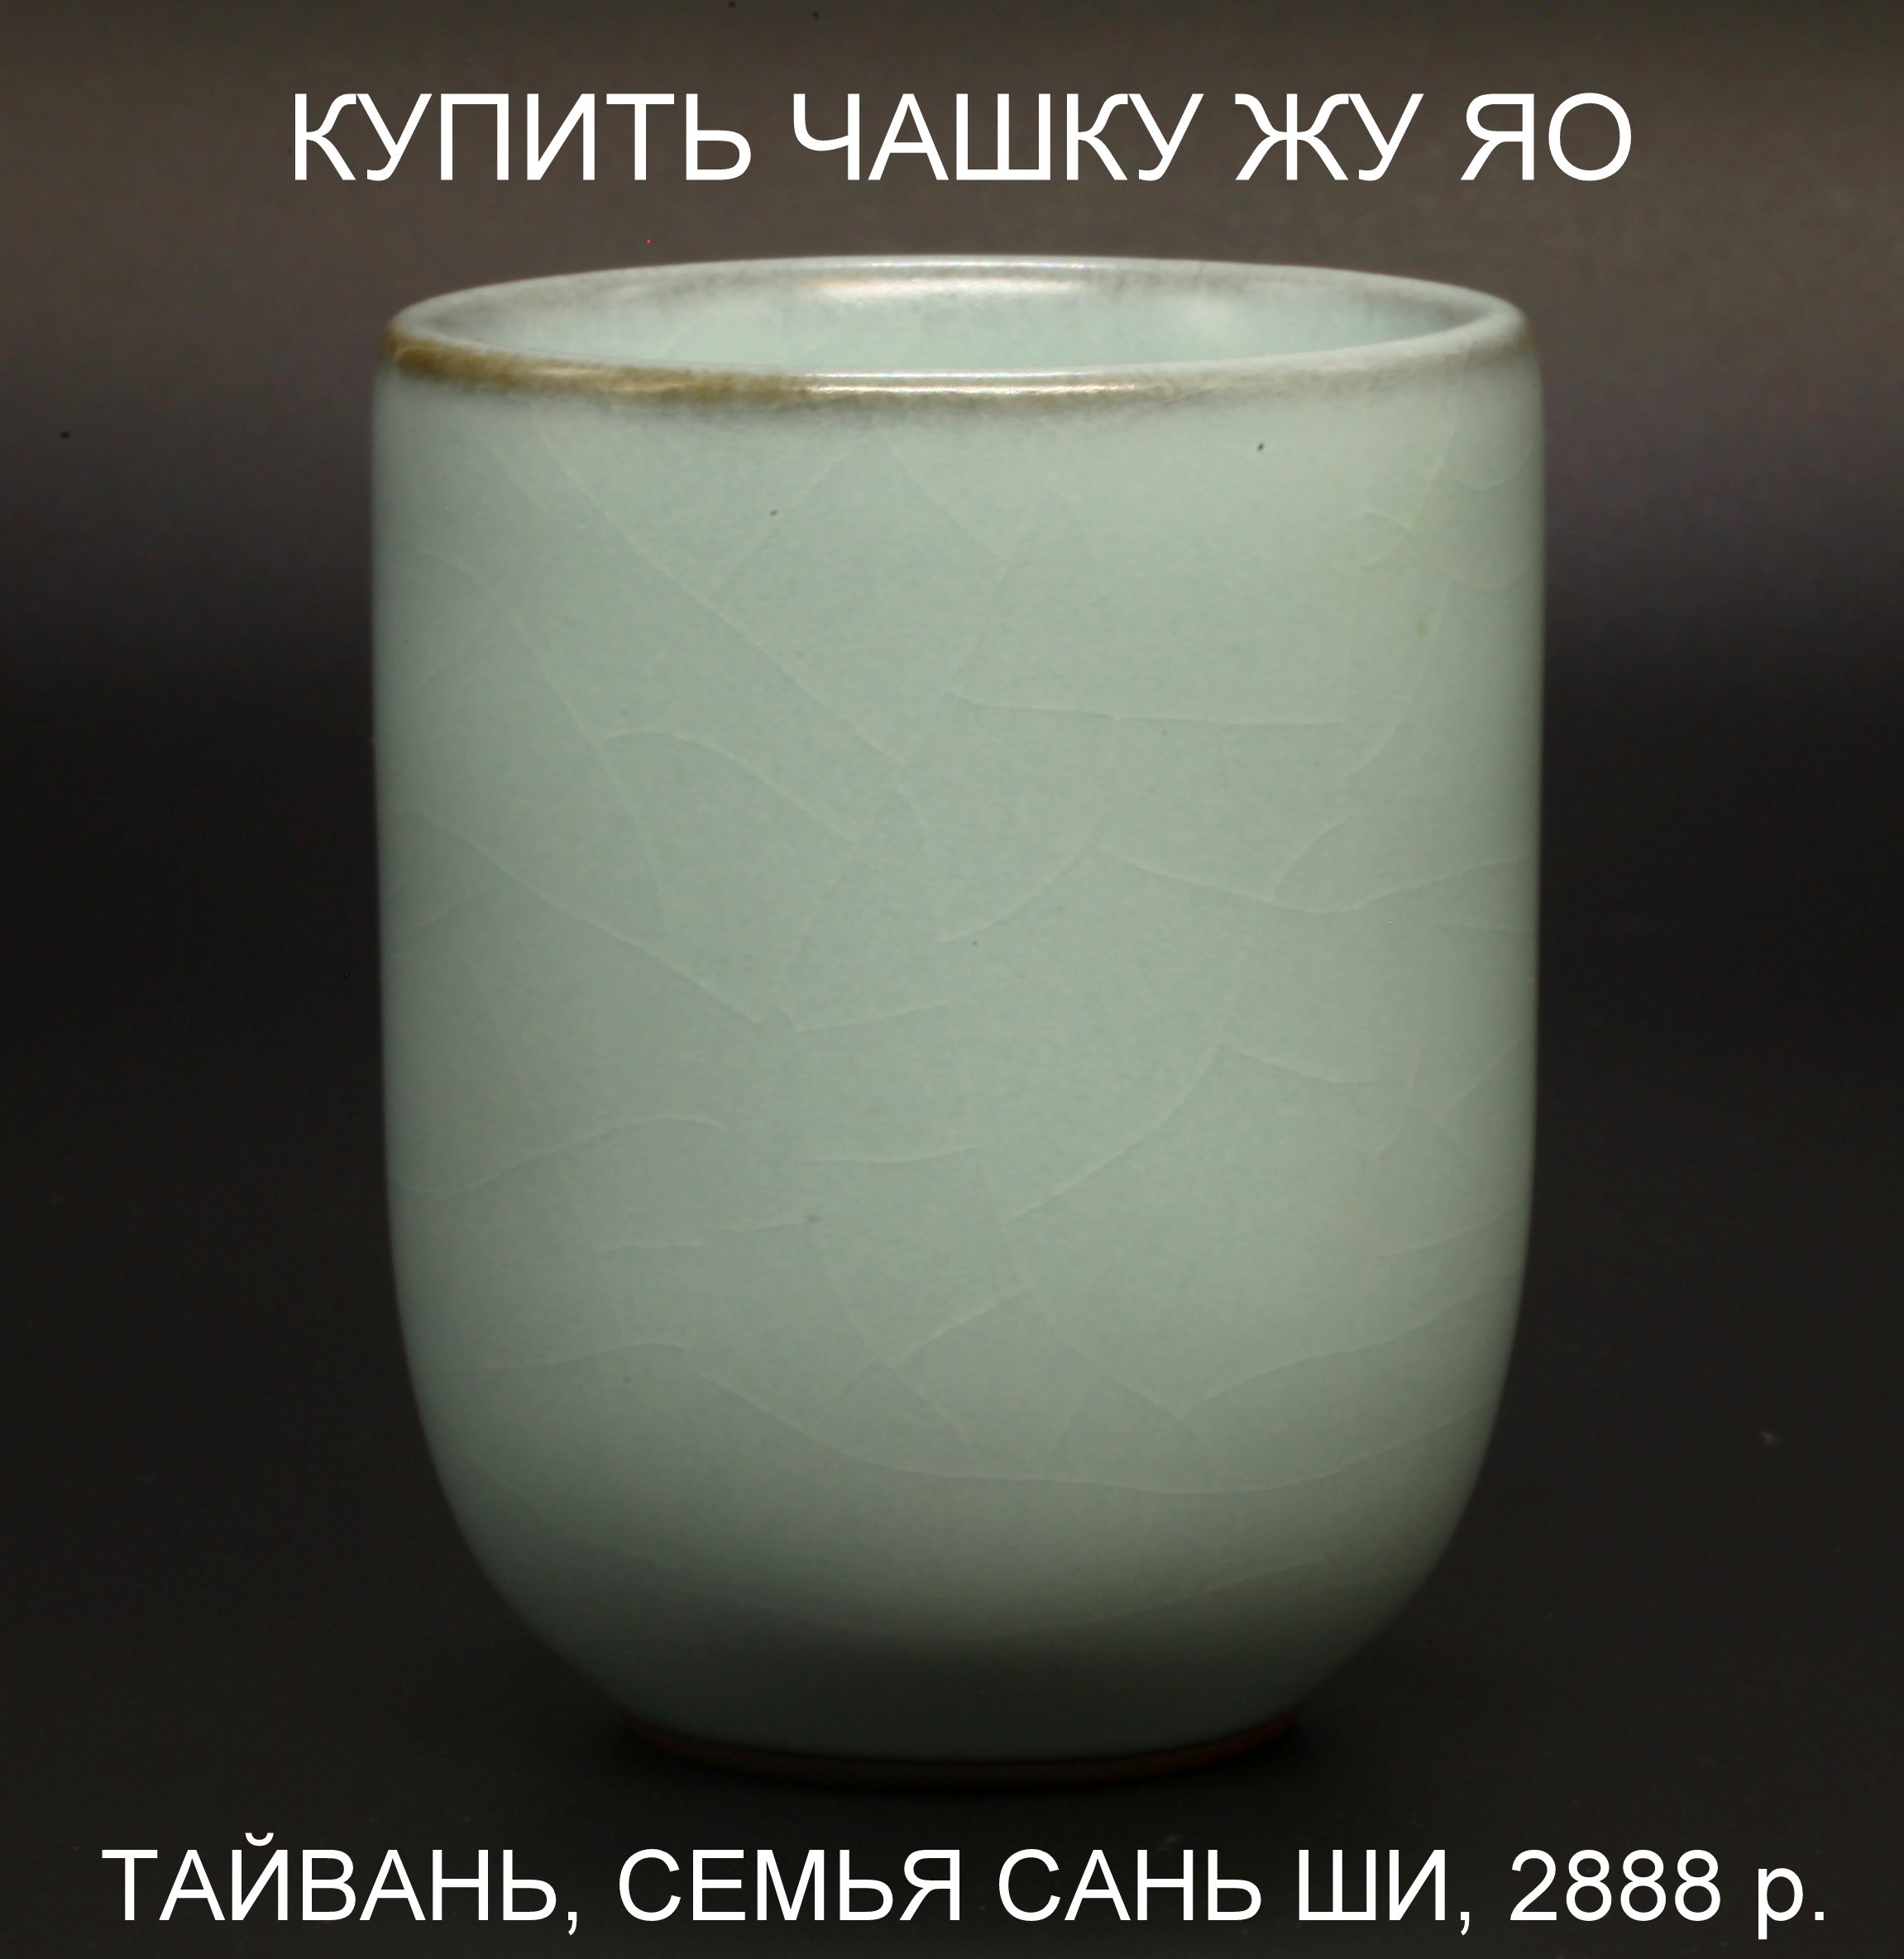 Чашка Жу Яо Тайвань Сань Ши фарфор 2888 р.